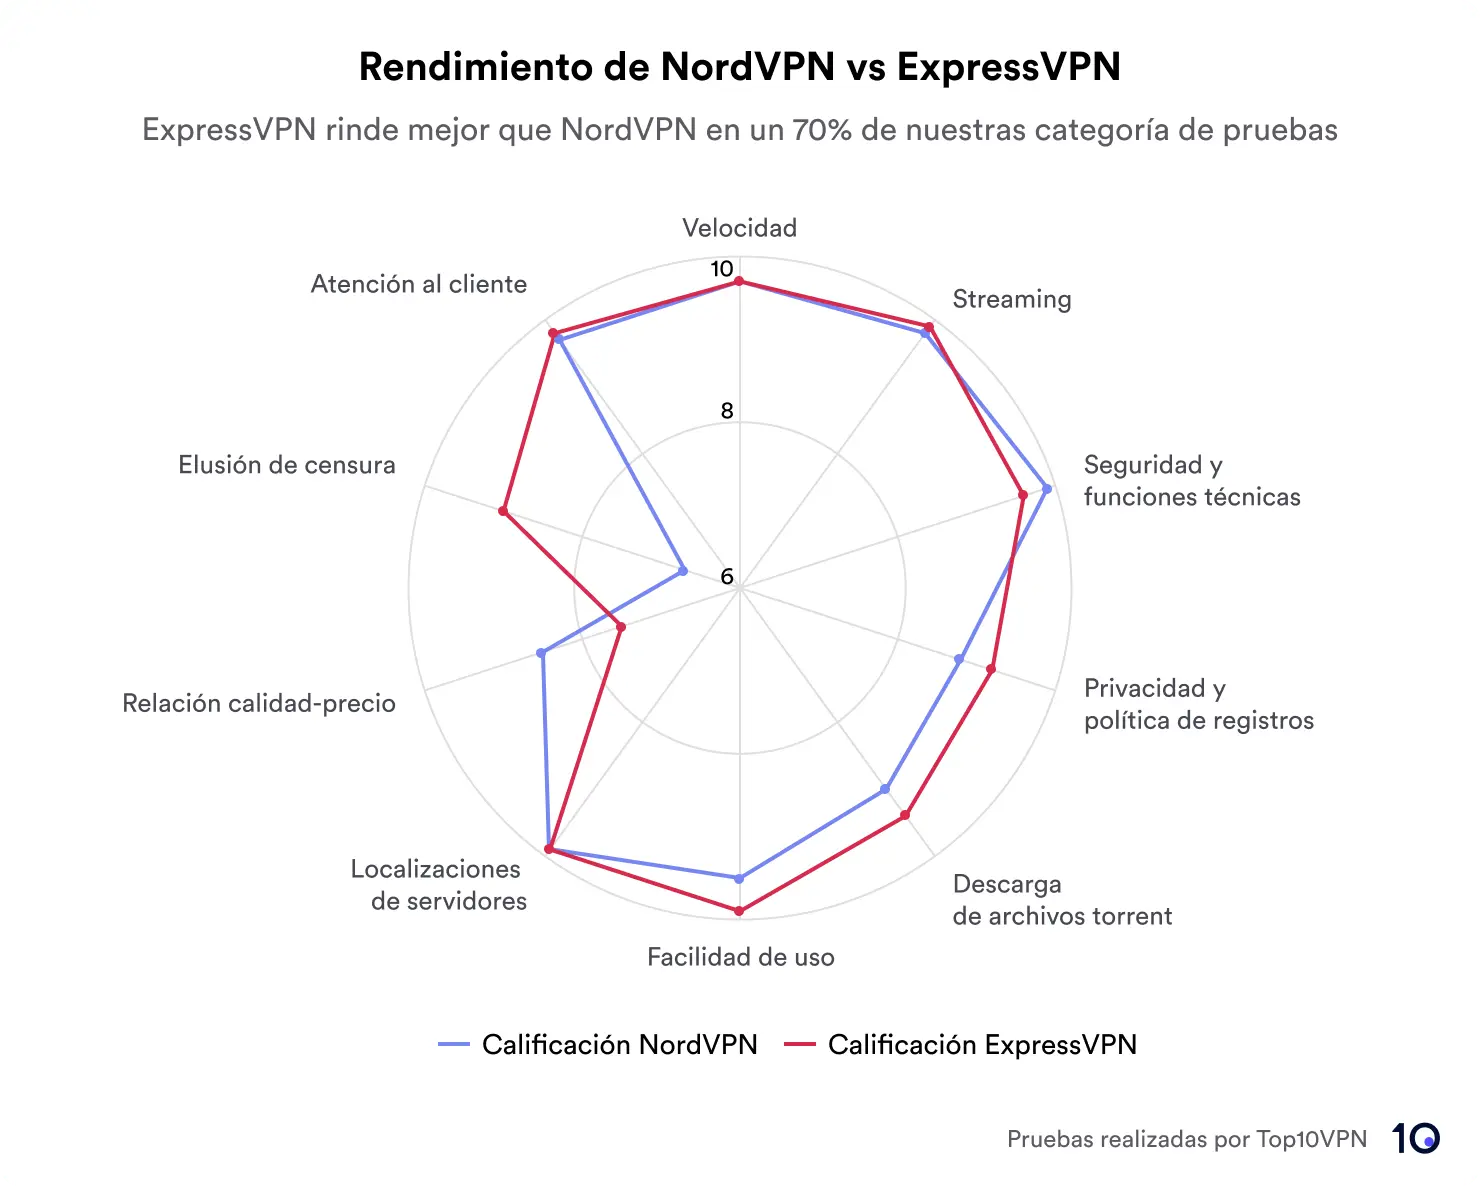 Gráfico comparando el rendimiento de NordVPN y ExpressVPN